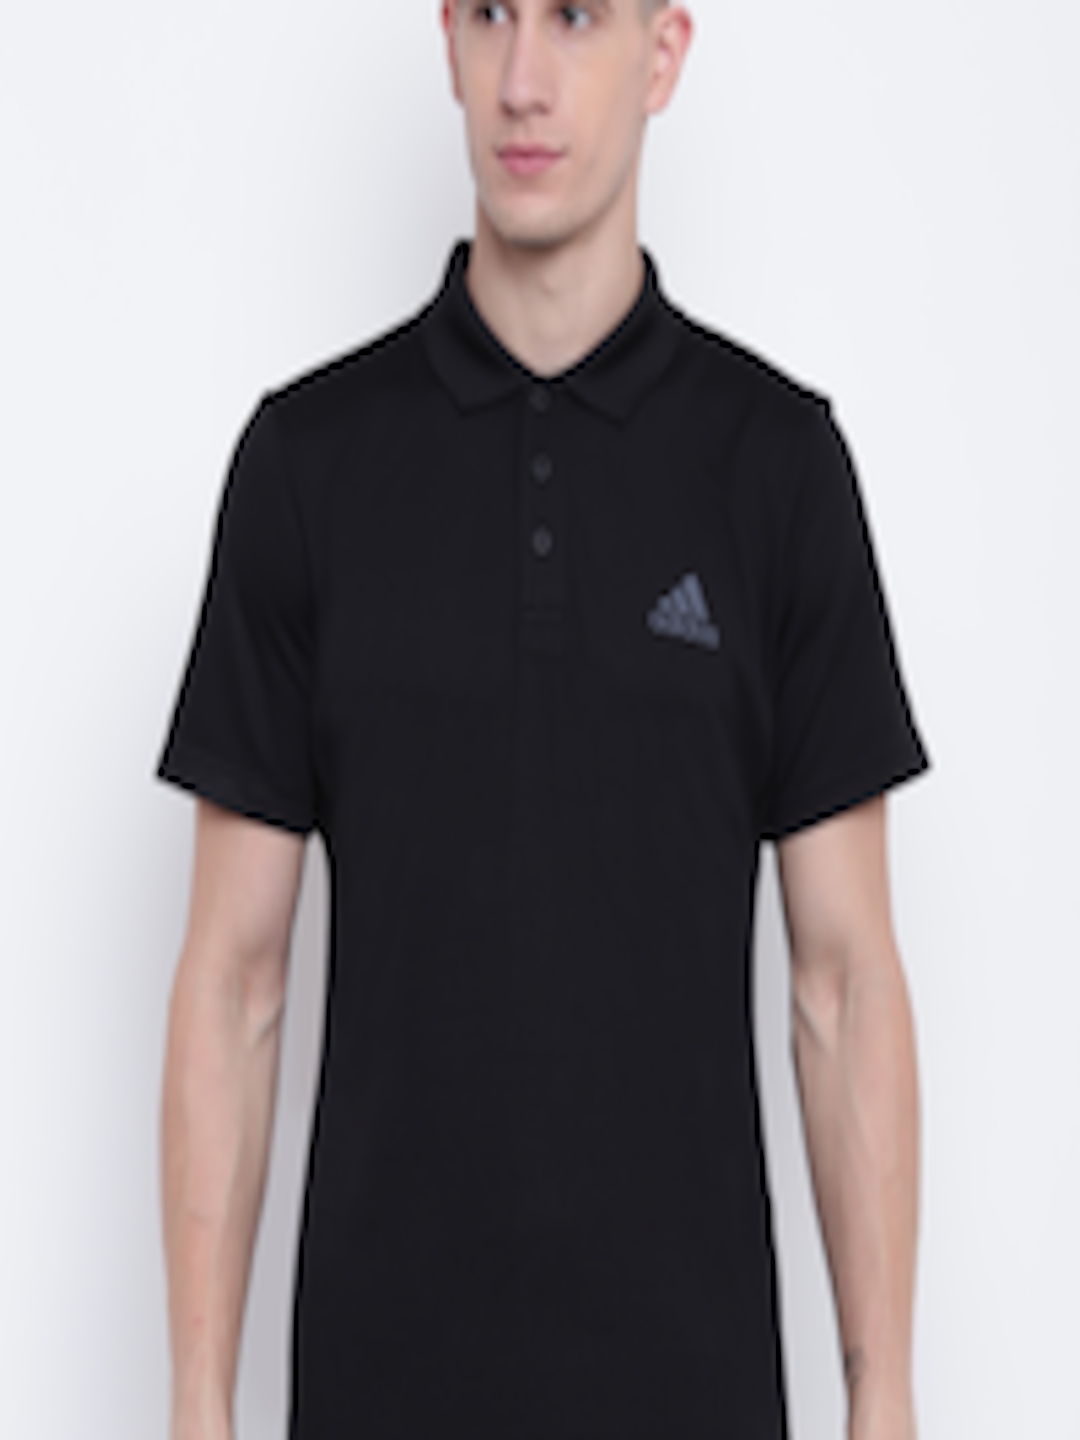 Buy ADIDAS Men Black Club Tex Tennis Polo T Shirt - Tshirts for Men ...